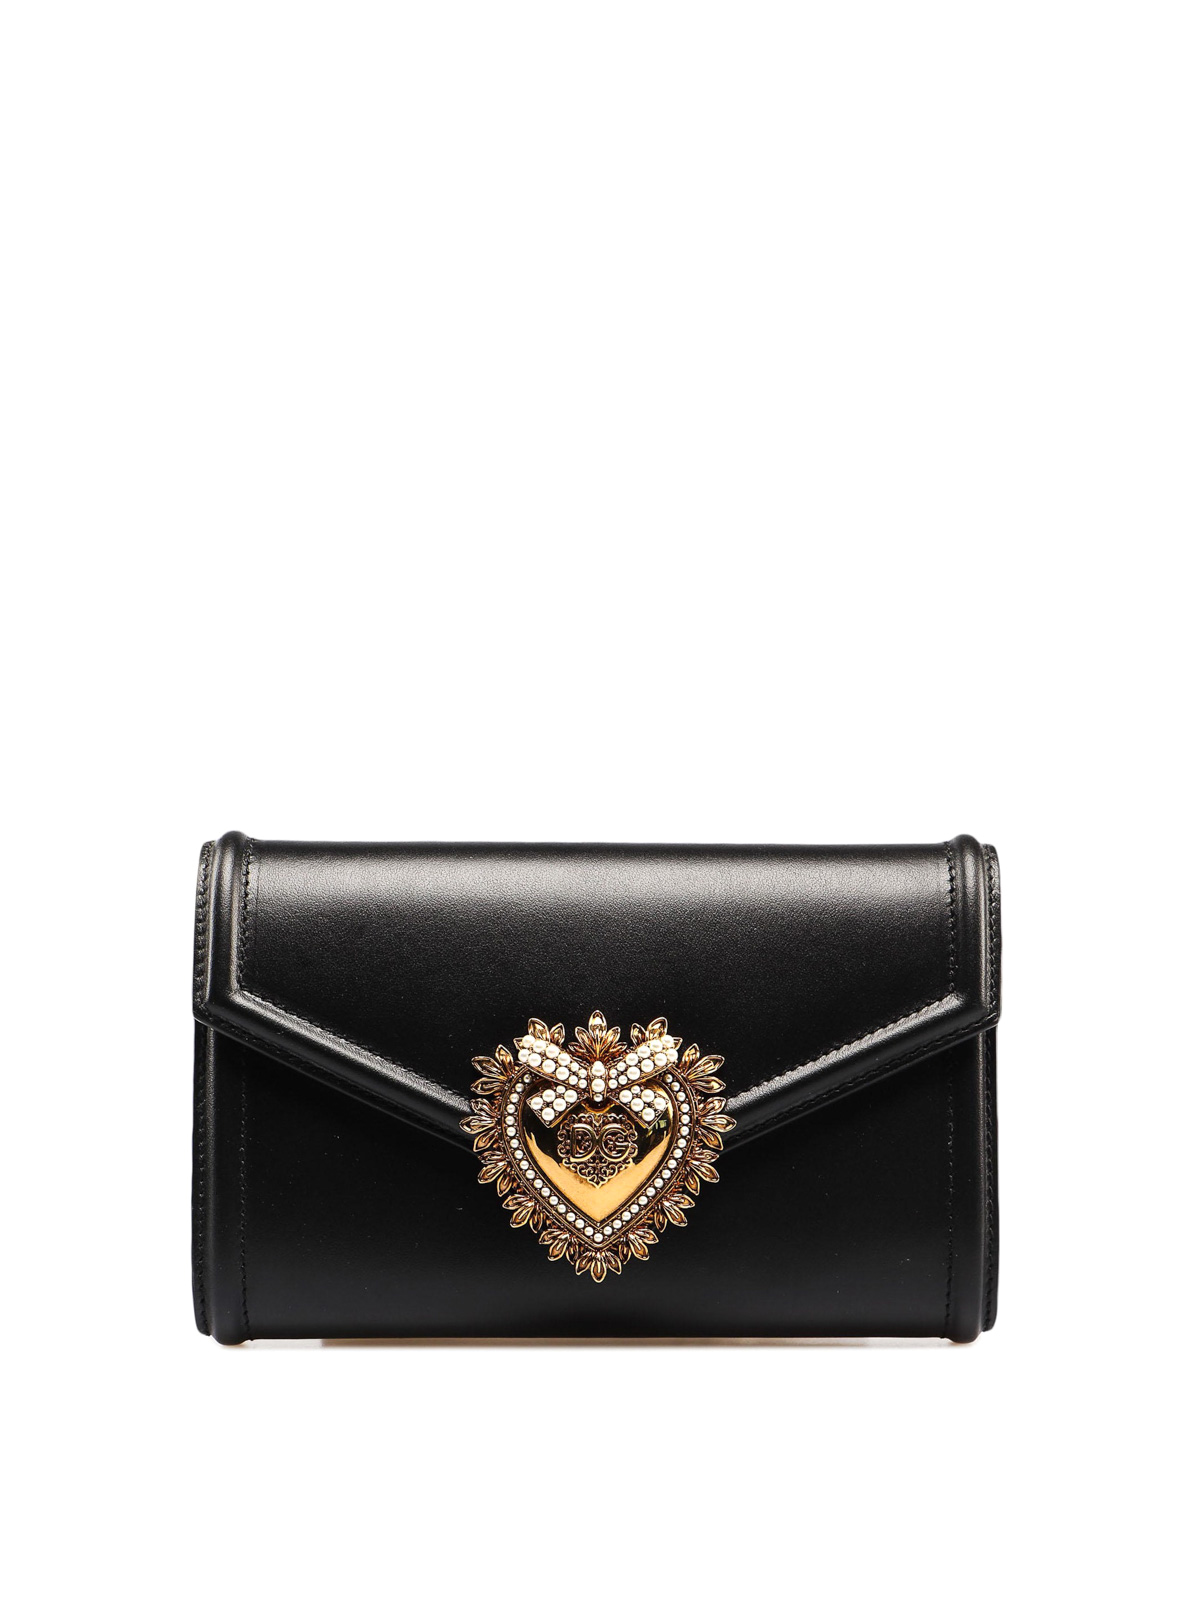 Belt bags Dolce & Gabbana - Devotion black smooth leather belt bag -  BB6706AV89380999